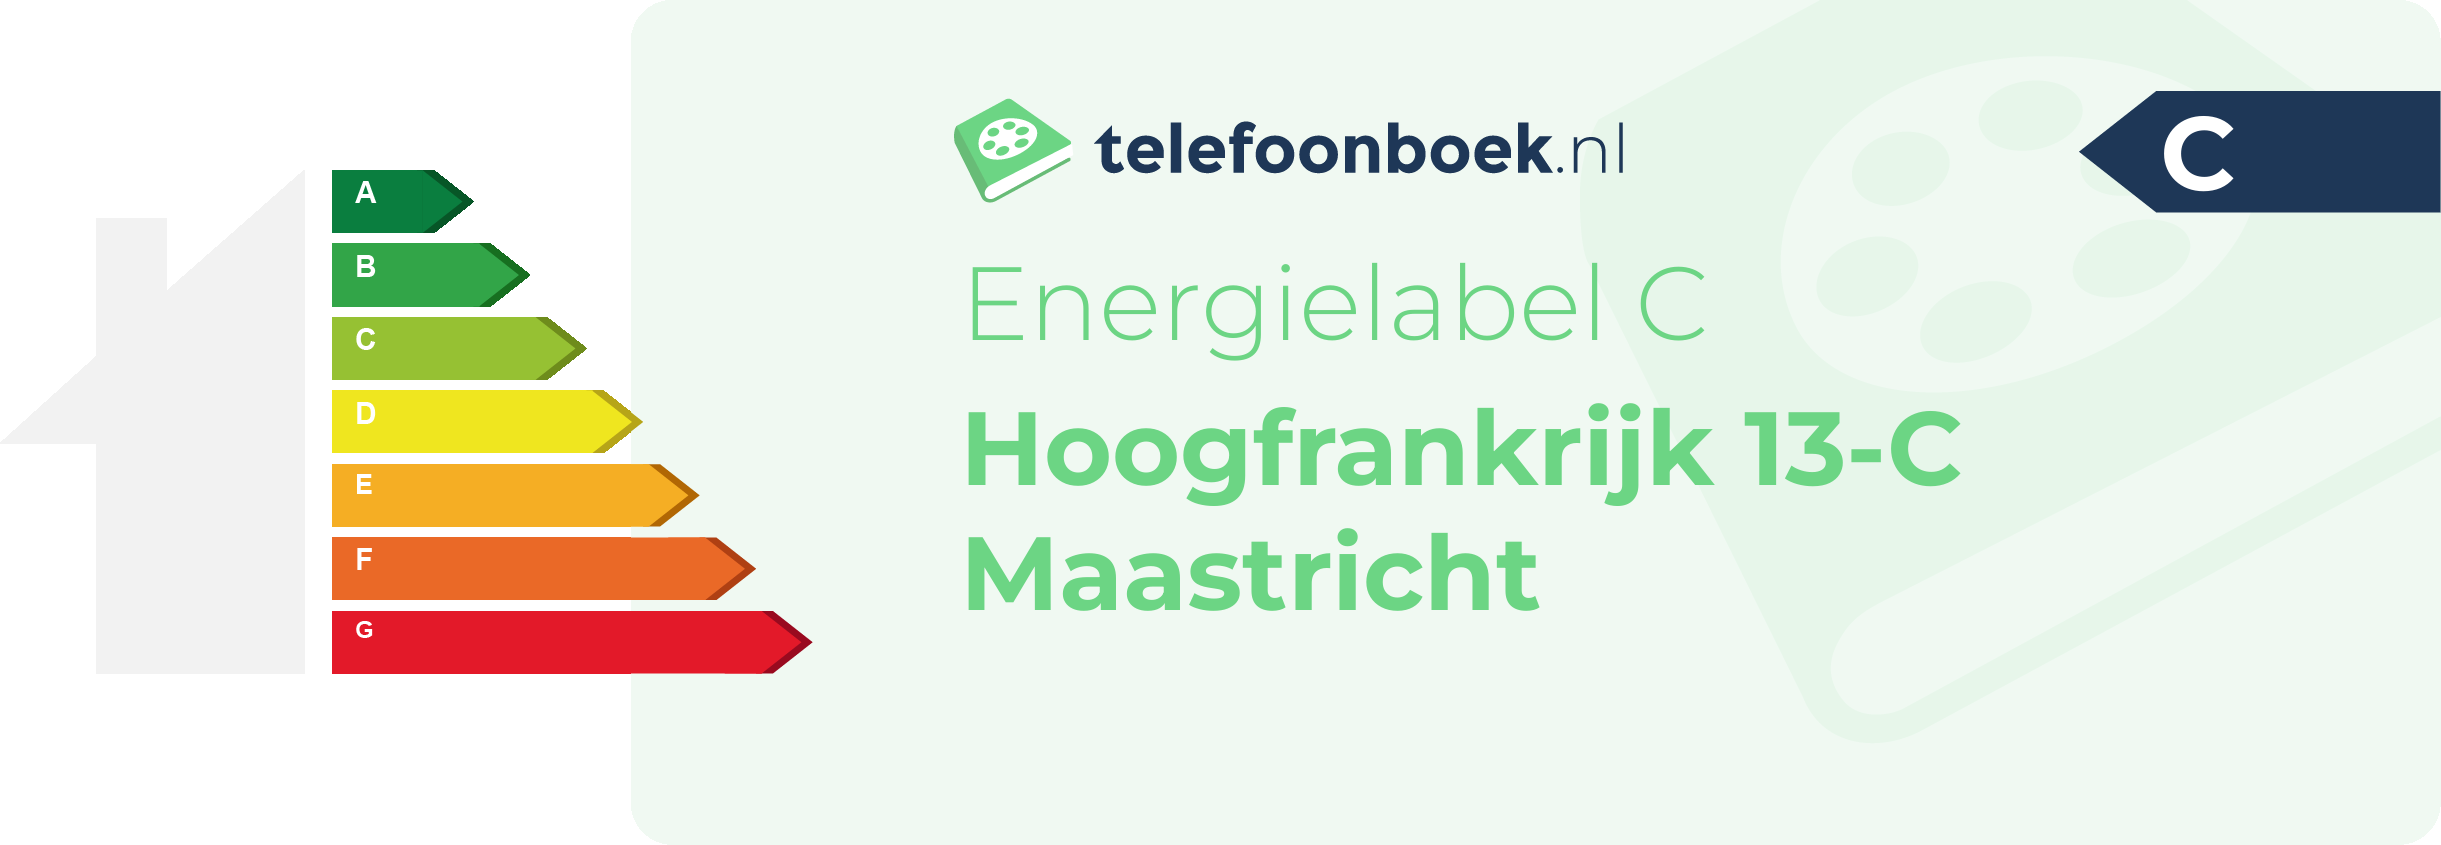 Energielabel Hoogfrankrijk 13-C Maastricht